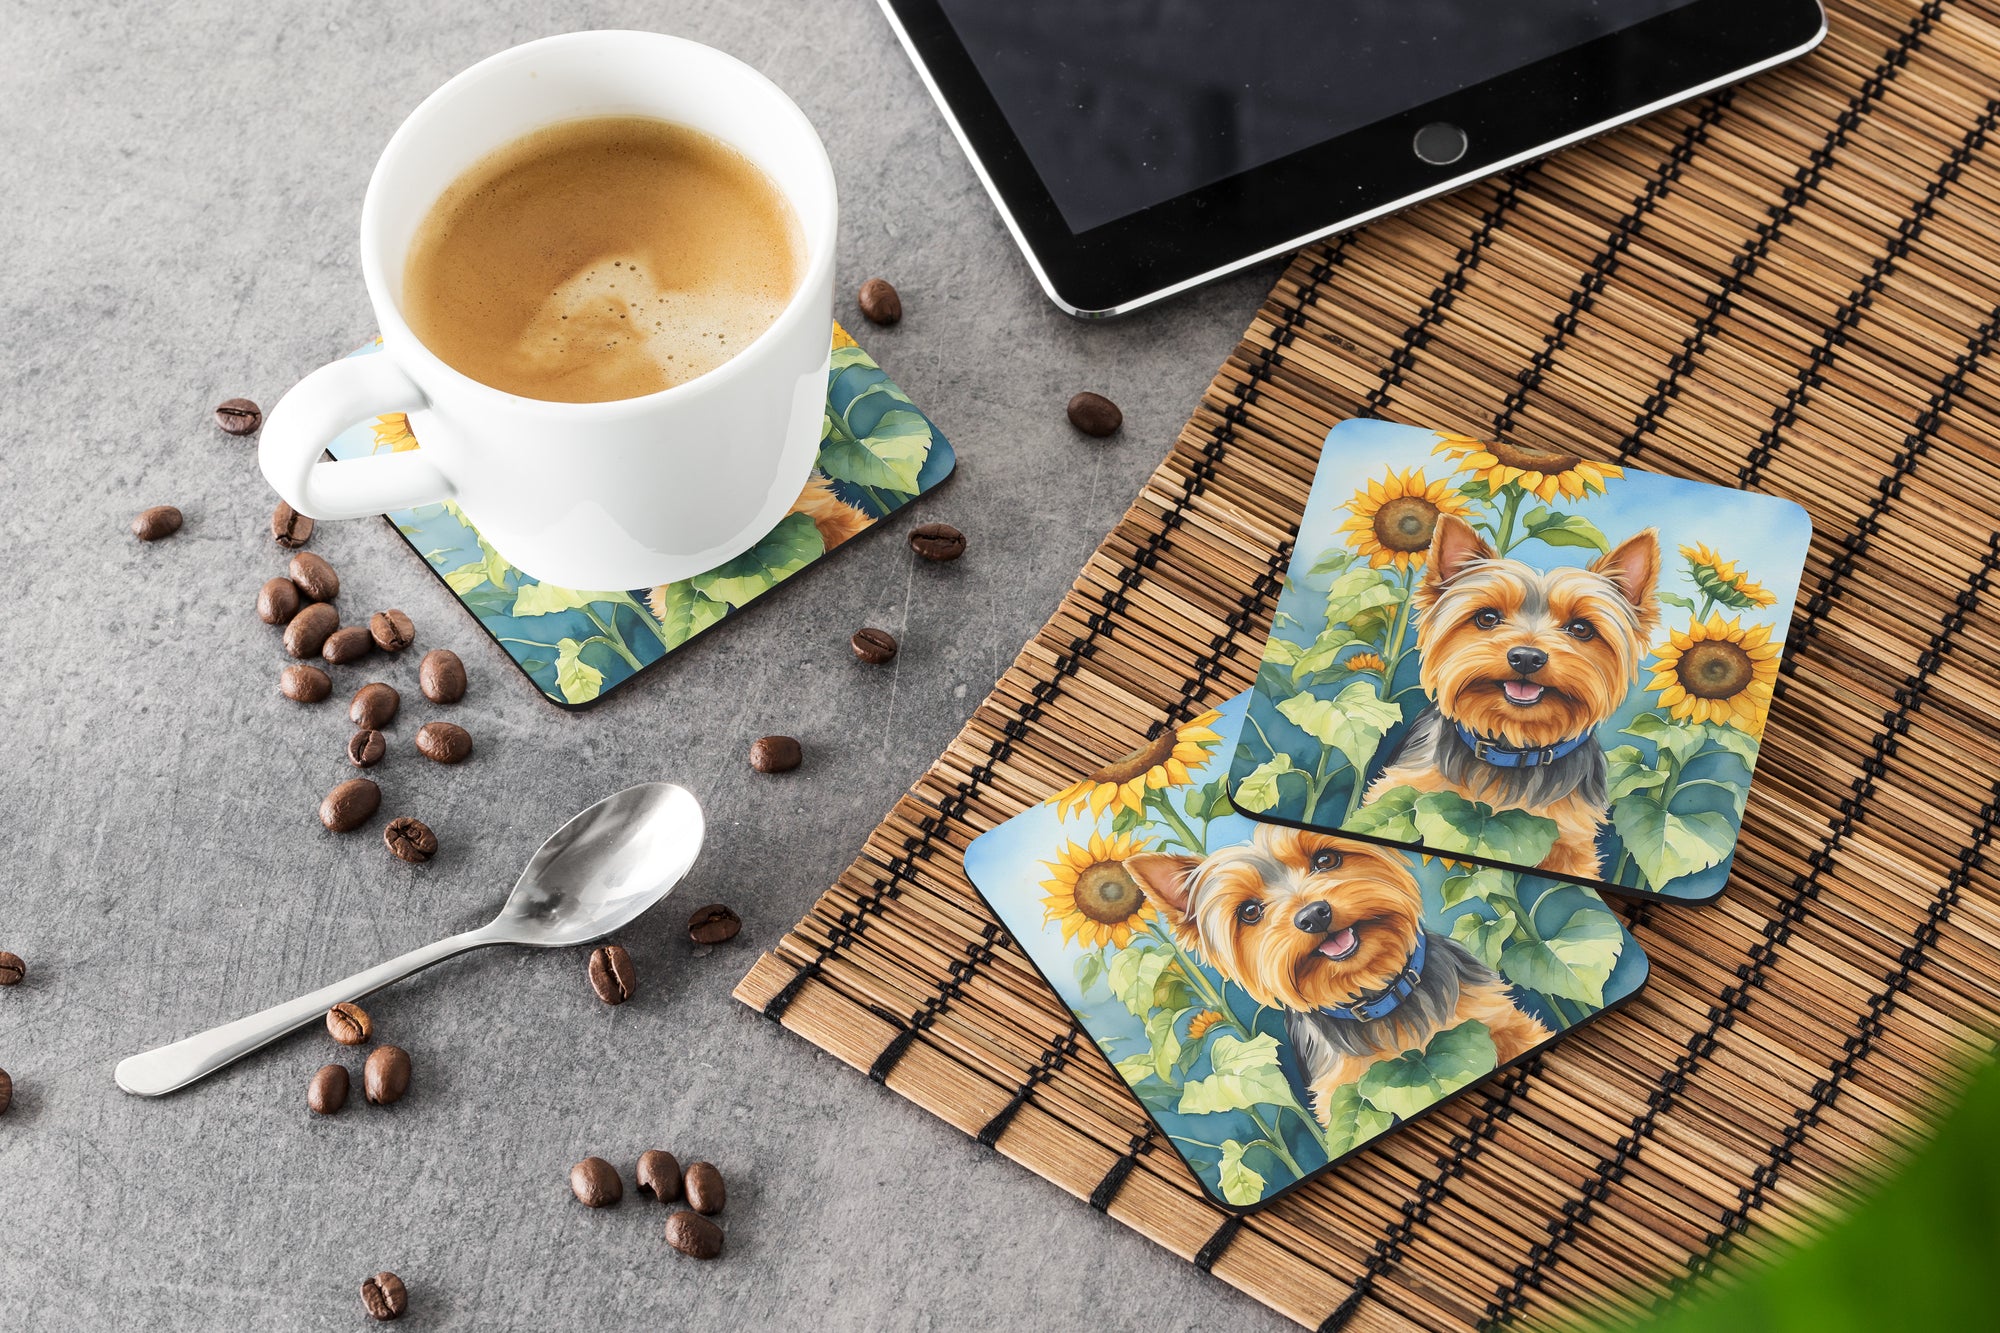 Silky Terrier in Sunflowers Foam Coasters